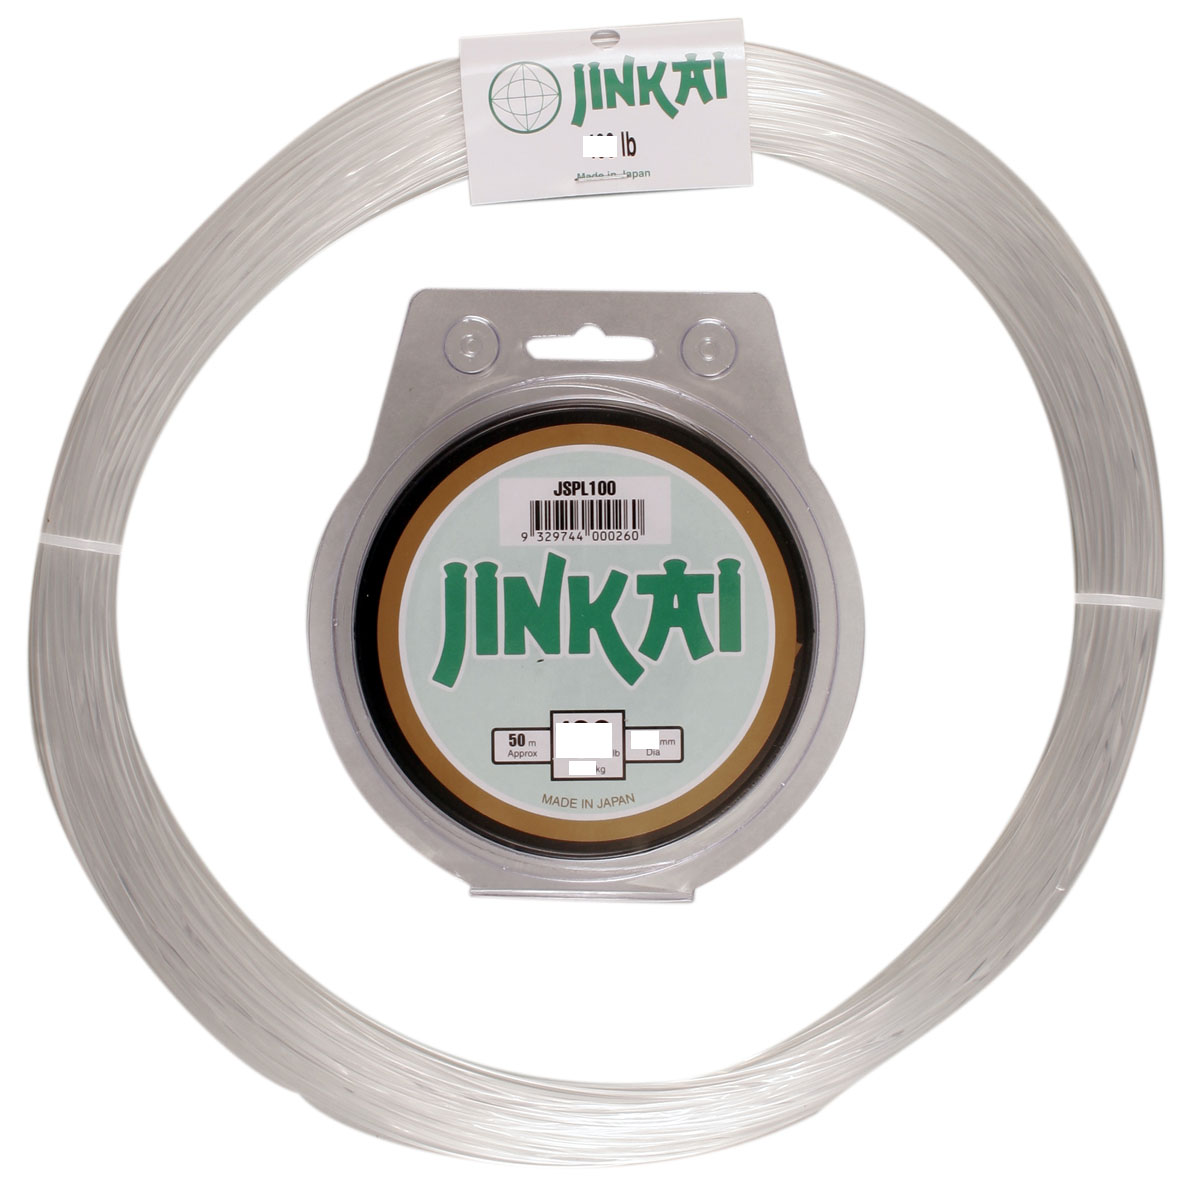  Jinkai Premium Monofiliment Leader - 100 yd. Coil